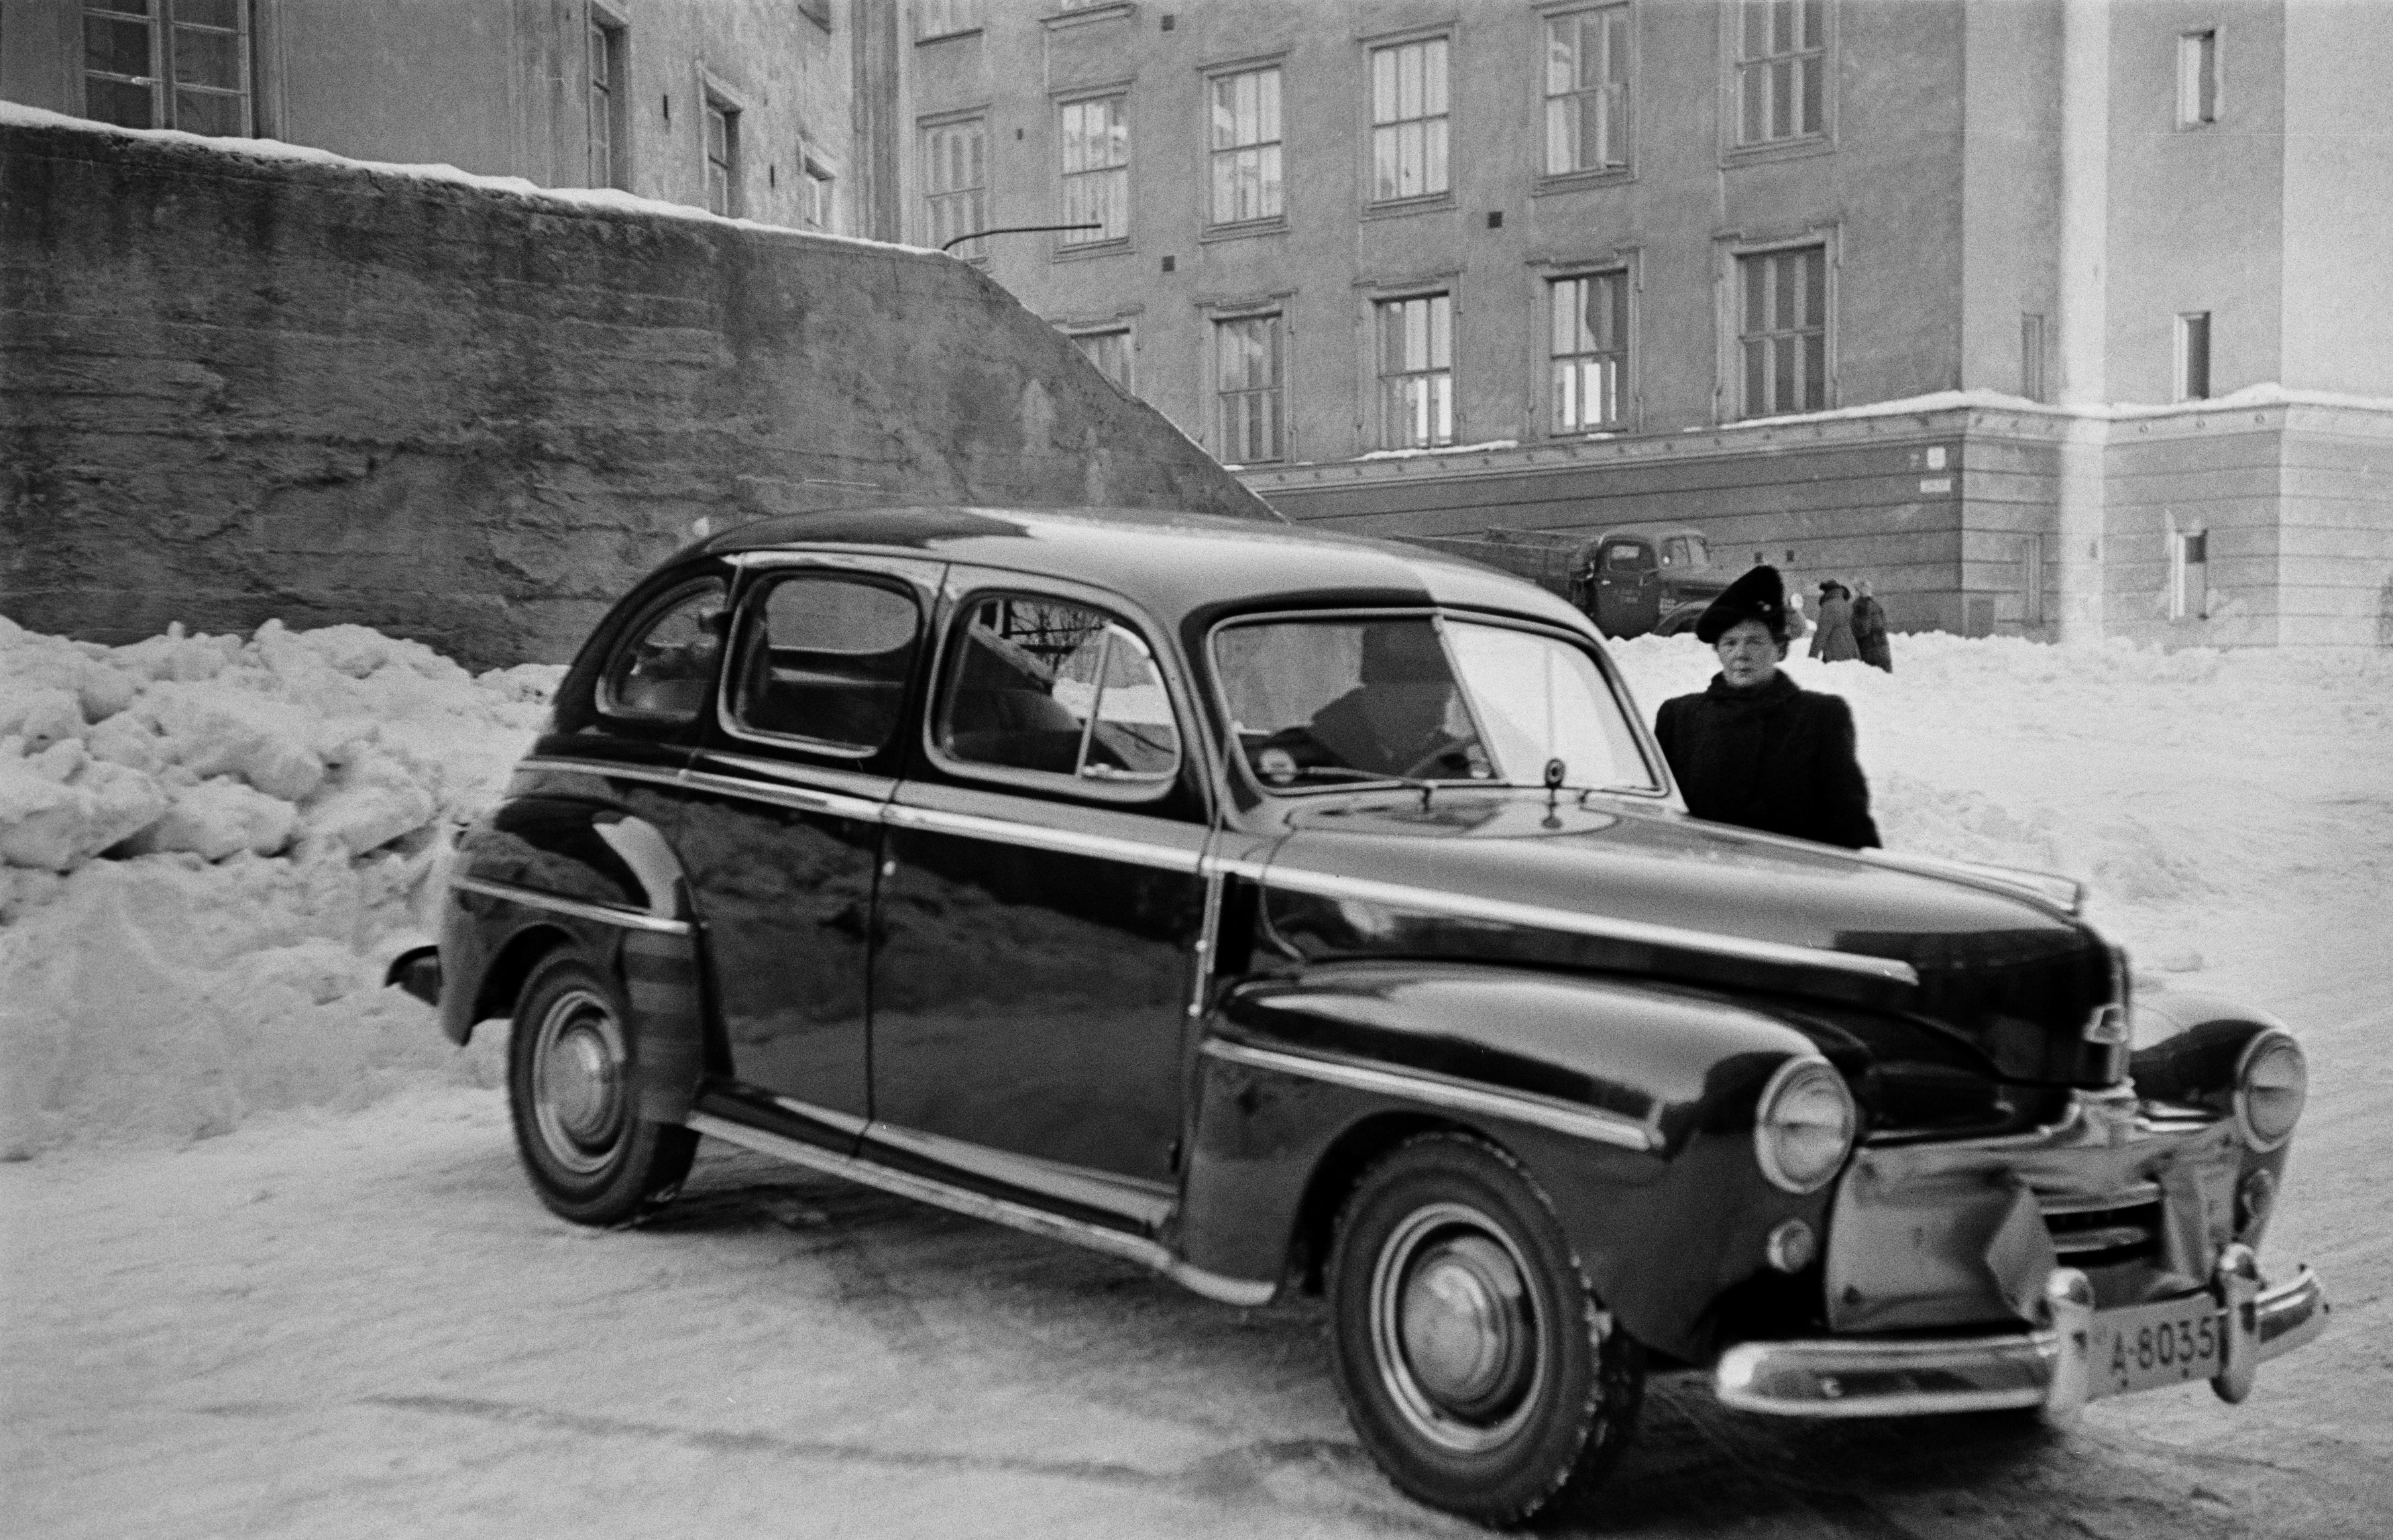 Henkilöauto (Ford vm. 1948) Agricolankujan ja Torkkelinkadun risteyksessä.